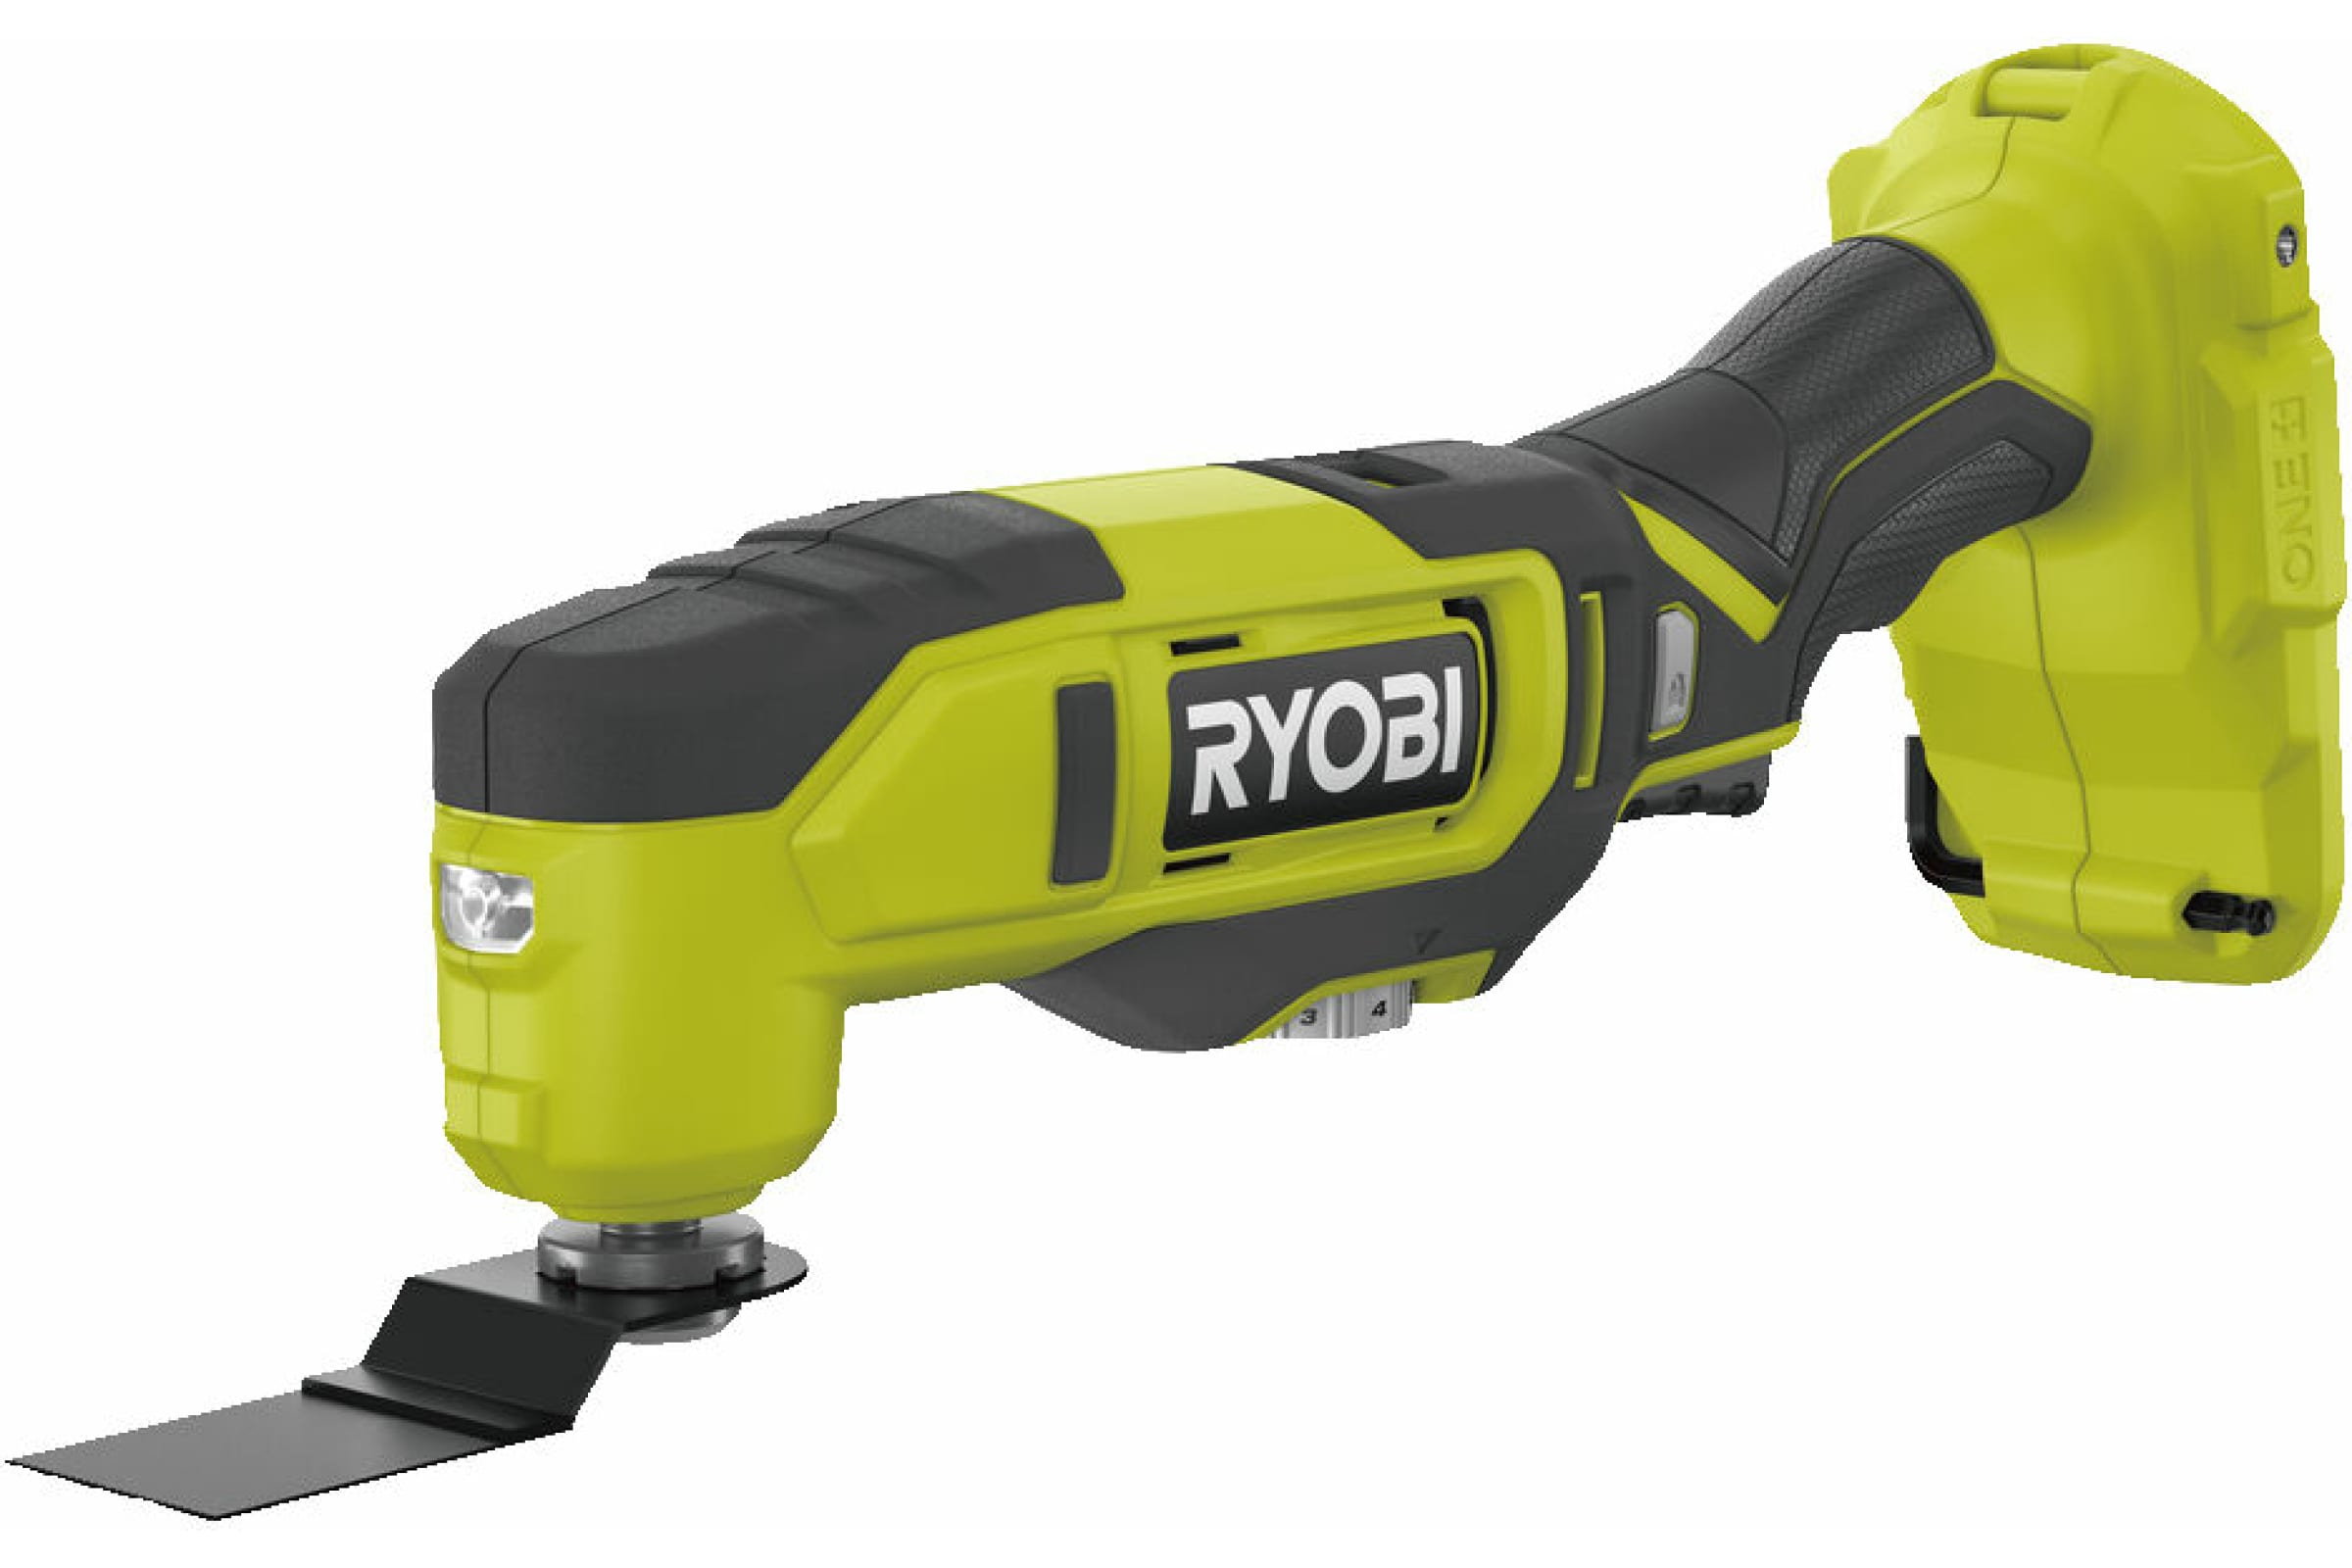 Ryobi 18В Многофункциональный инструмент RMT18-0 5133005346 эспандер ленточный многофункциональный 2 15 кг 208 х 1 3 х 0 5 см зеленый